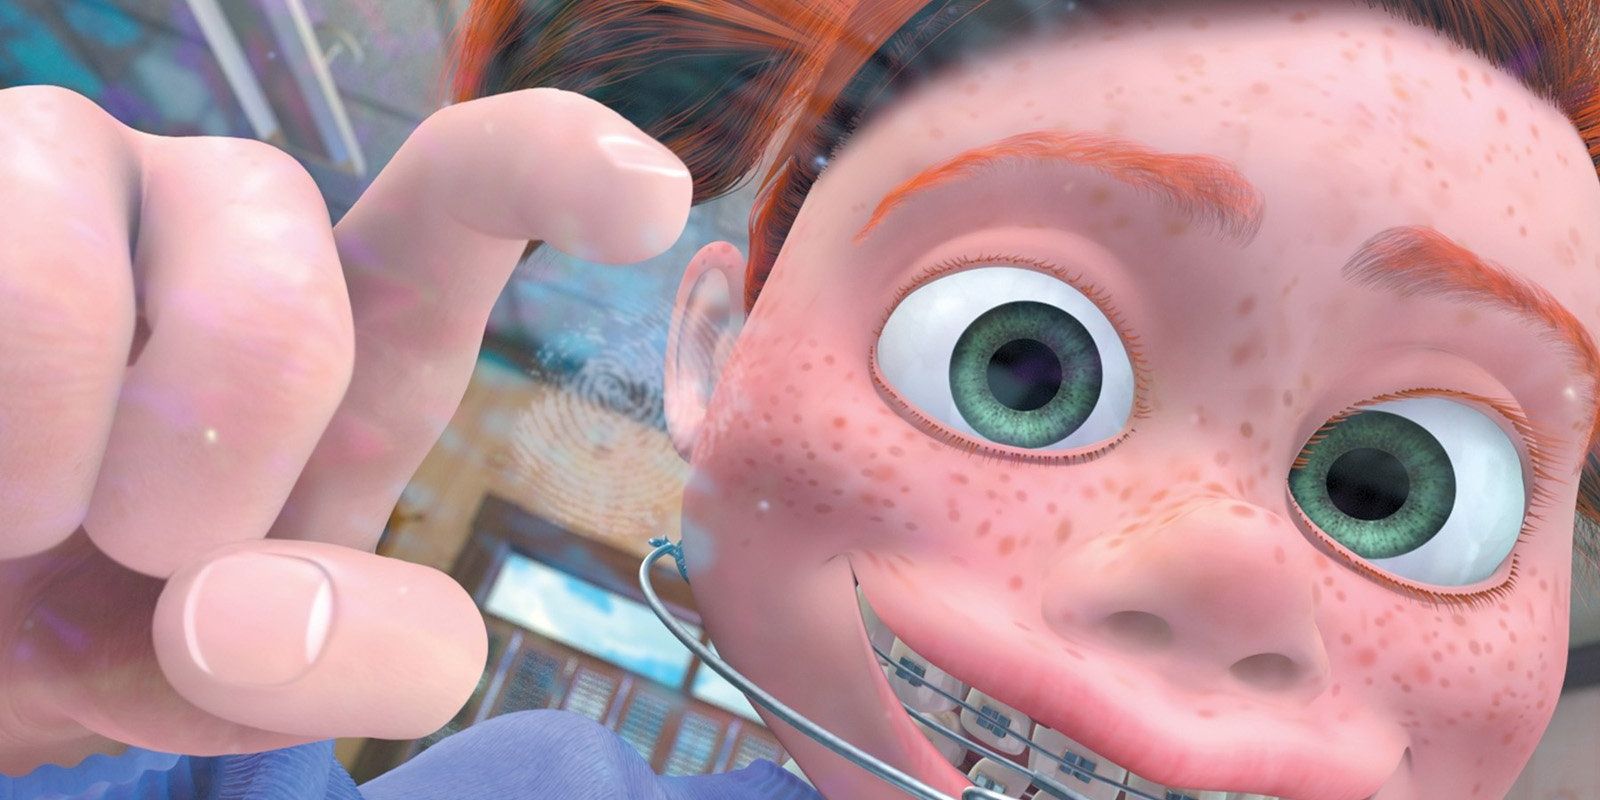 Darla in Finding Nemo